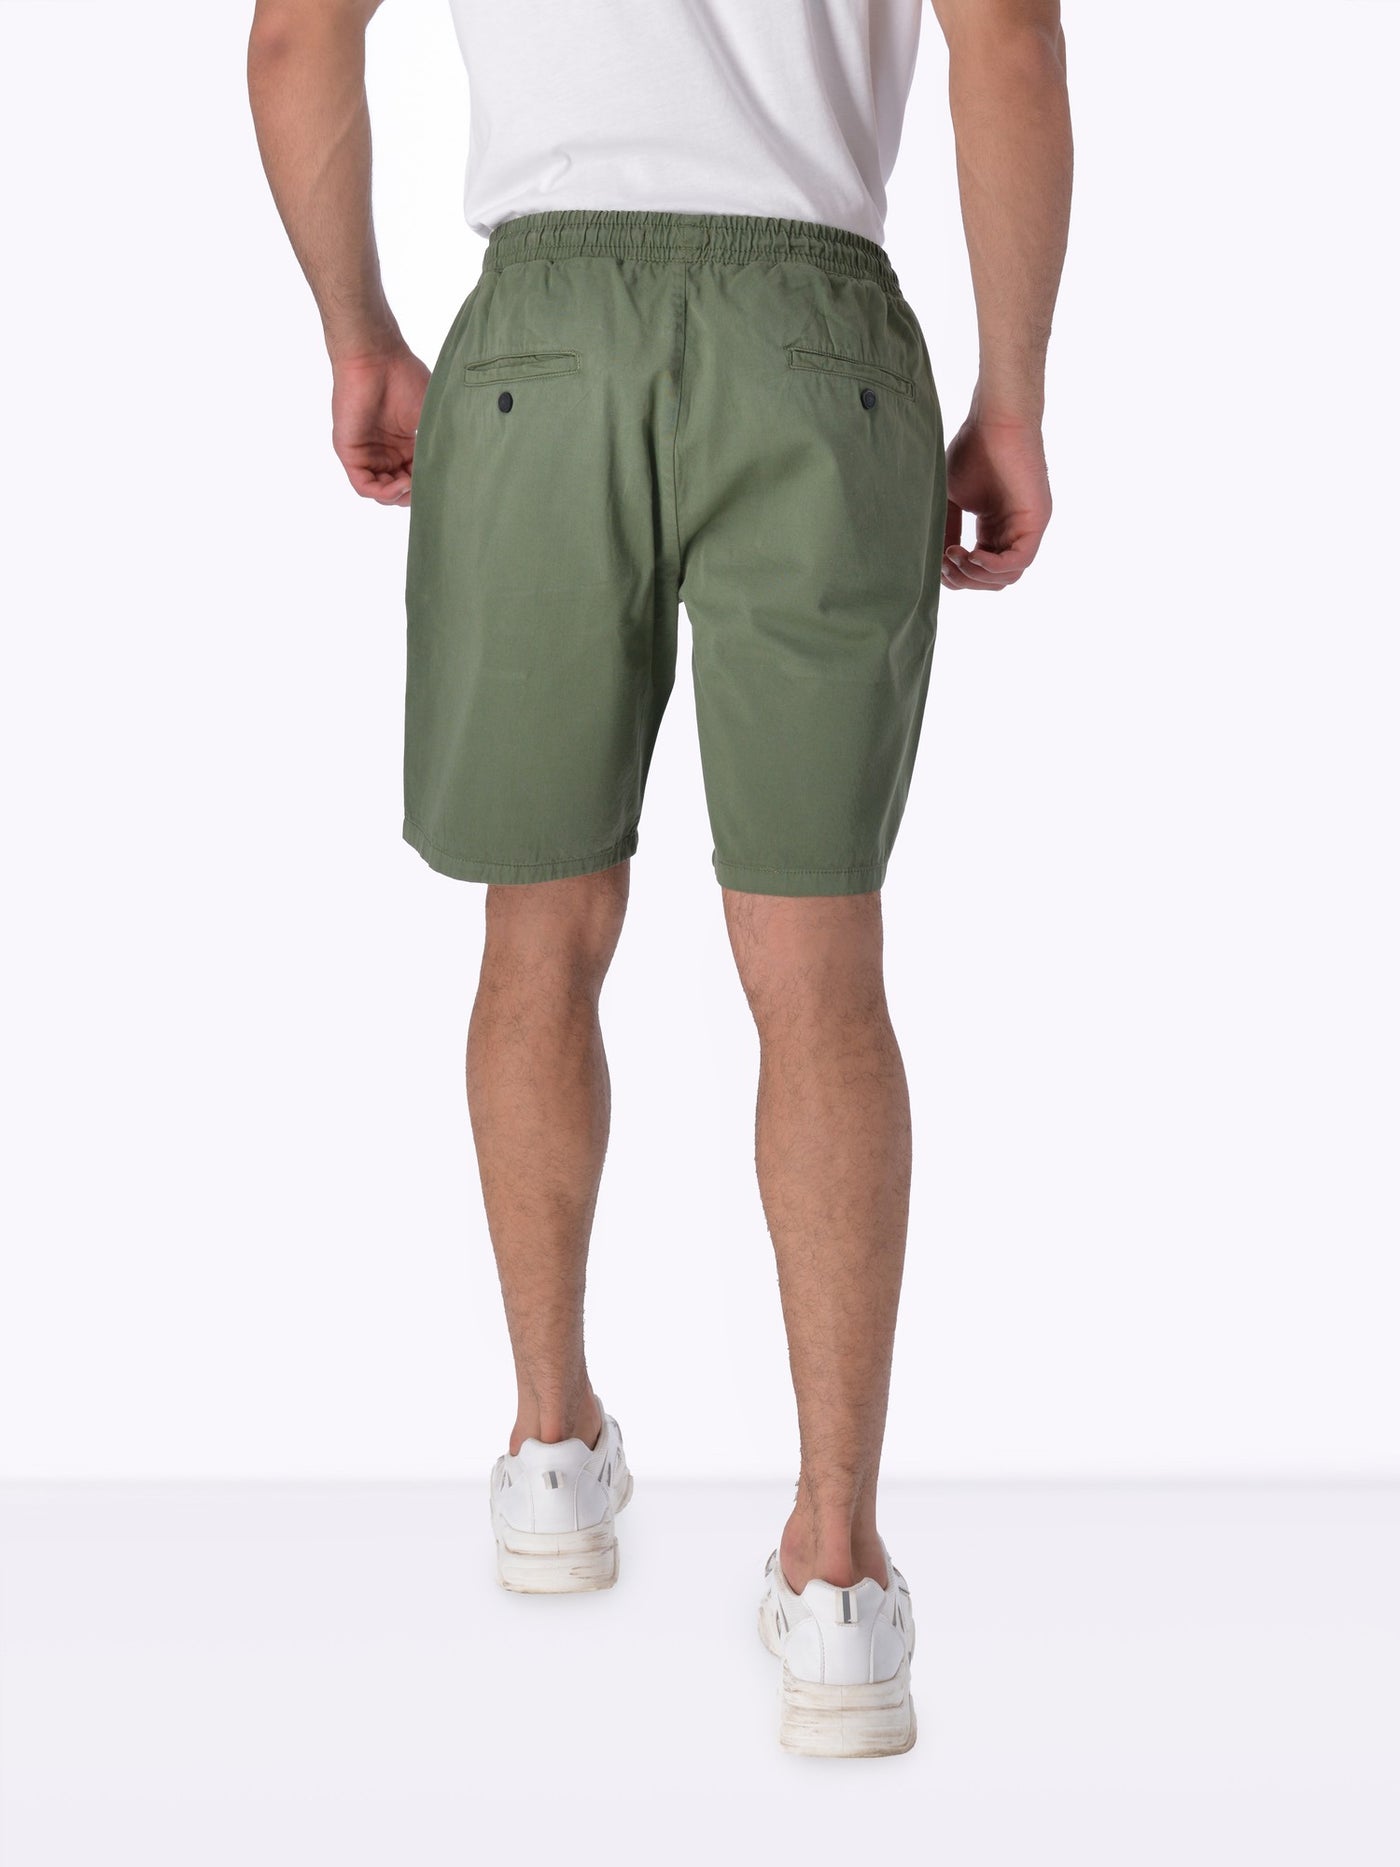 OR Men's Cargo Shorts